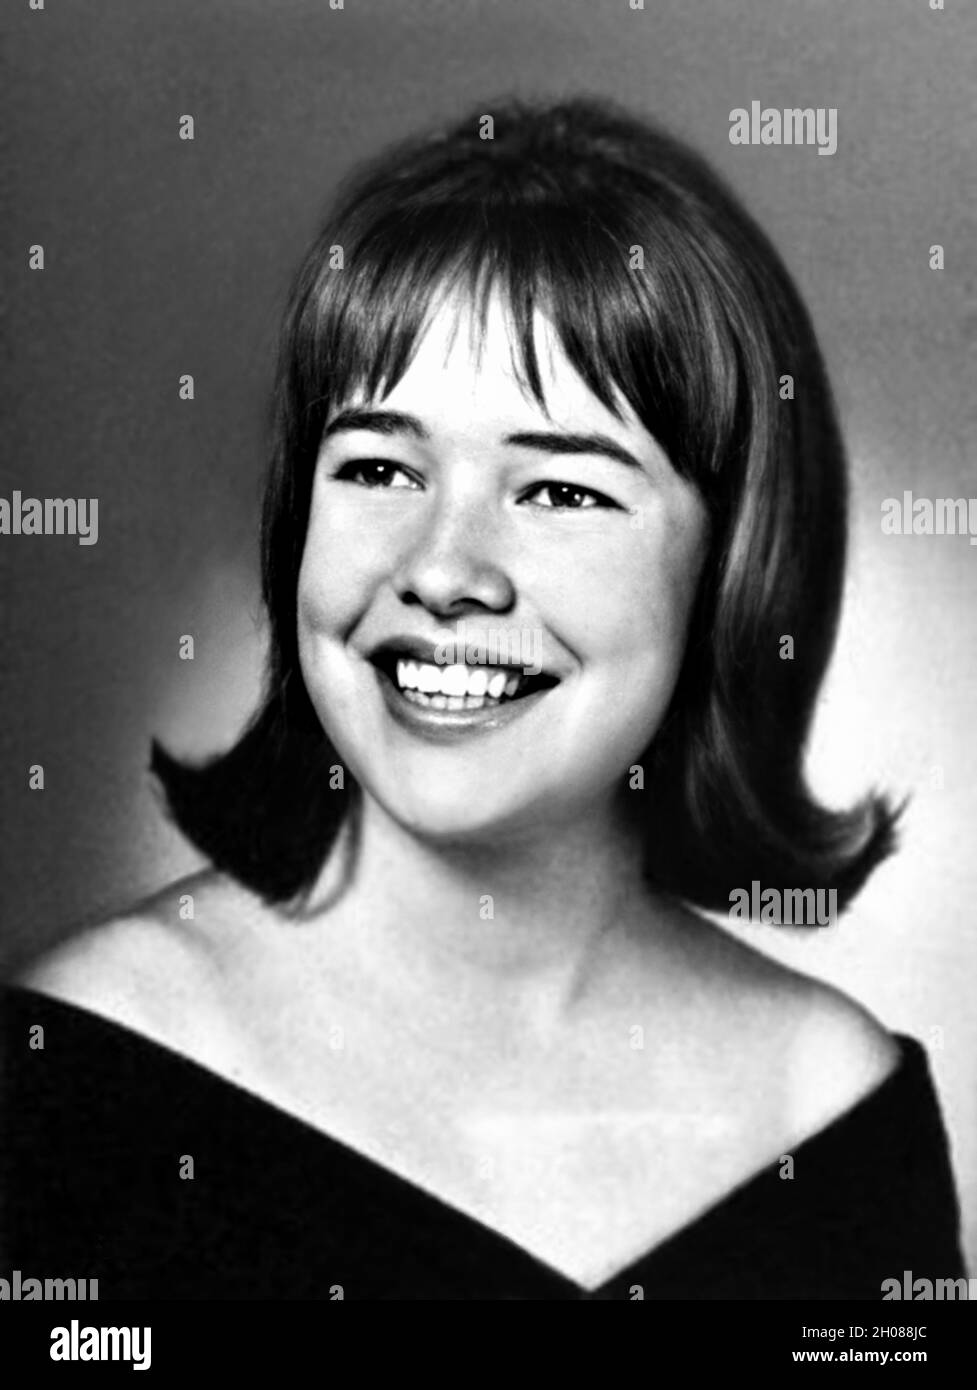 1965 , USA : la celebrata attrice americana KATHY BATES ( nata il 28 giugno 1948 ) quando era giovane , di 17 anni, nell'Annuario della High School . Fotografo sconosciuto .- STORIA - FOTO STORICHE - ATTORE - FILM - CINEMA - personalità da giovane giovani - personalità quando era giovane - ATTRICE - sorriso - sorriso - sorriso - annuario scolastico --- ARCHIVIO GBB Foto Stock